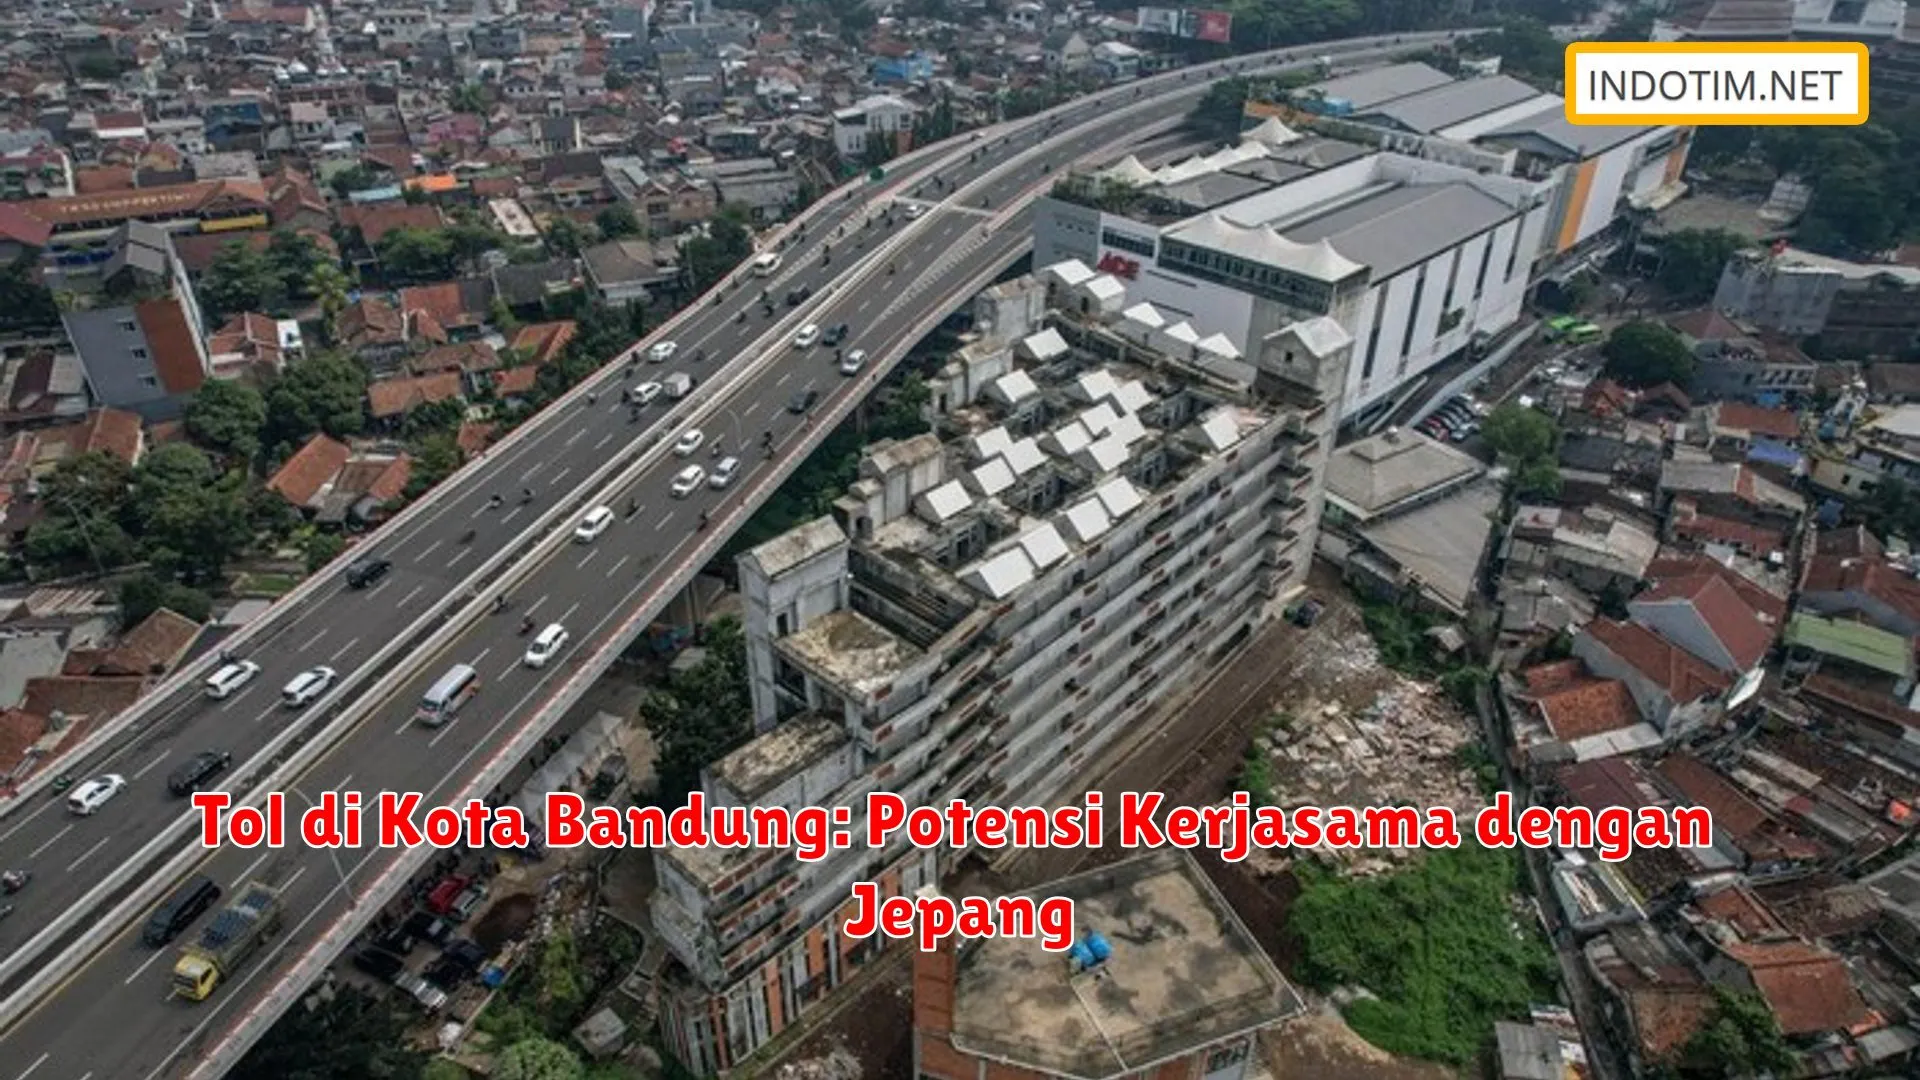 Tol di Kota Bandung: Potensi Kerjasama dengan Jepang